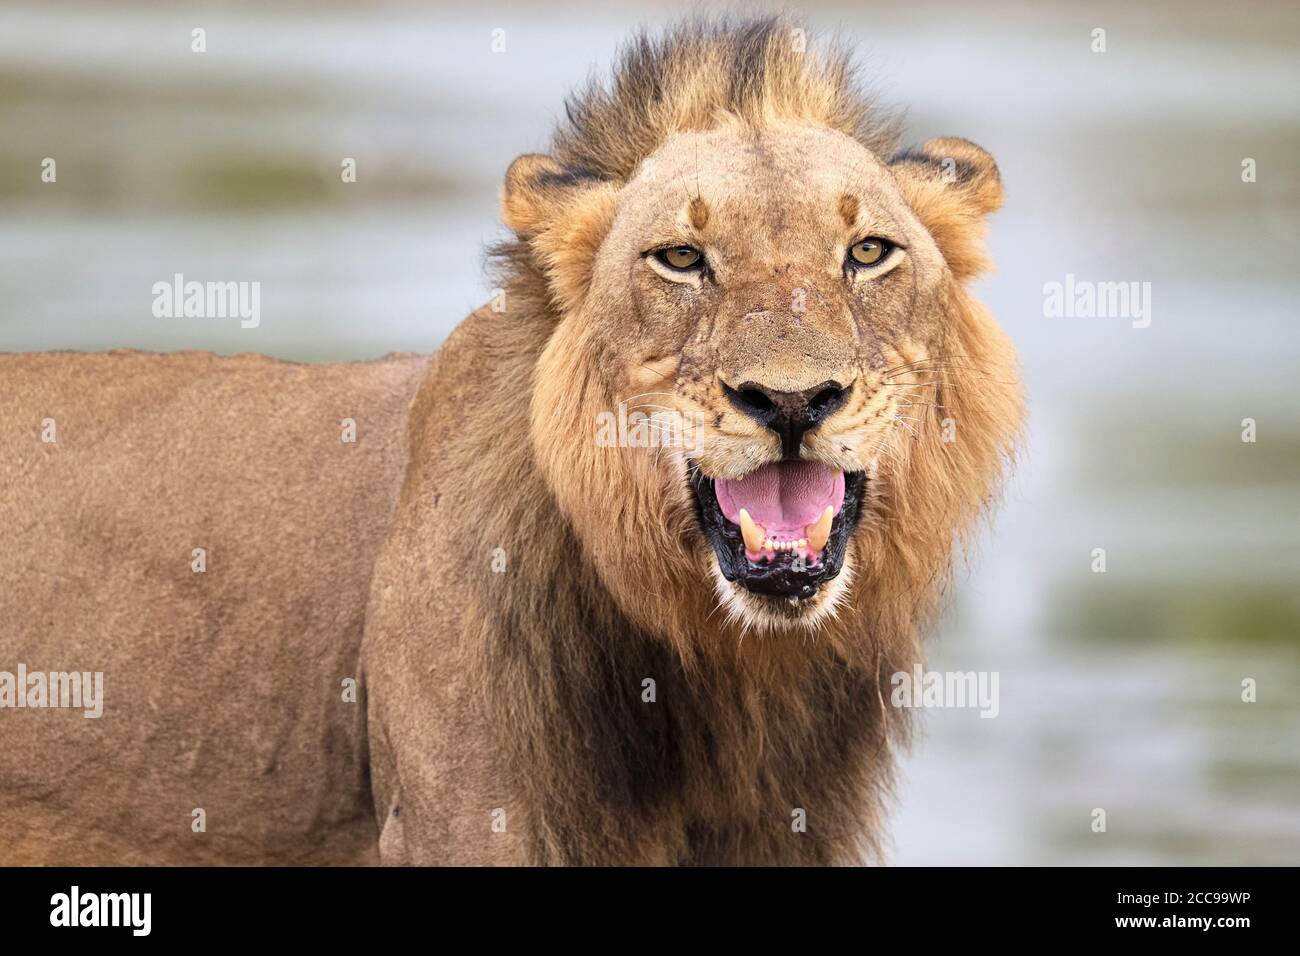 Portrait de Lion, Panthera leo, œil de visage en gros plan montrant ses dents dangereuses. Parc national de Luangwa Sud, Zambie Banque D'Images